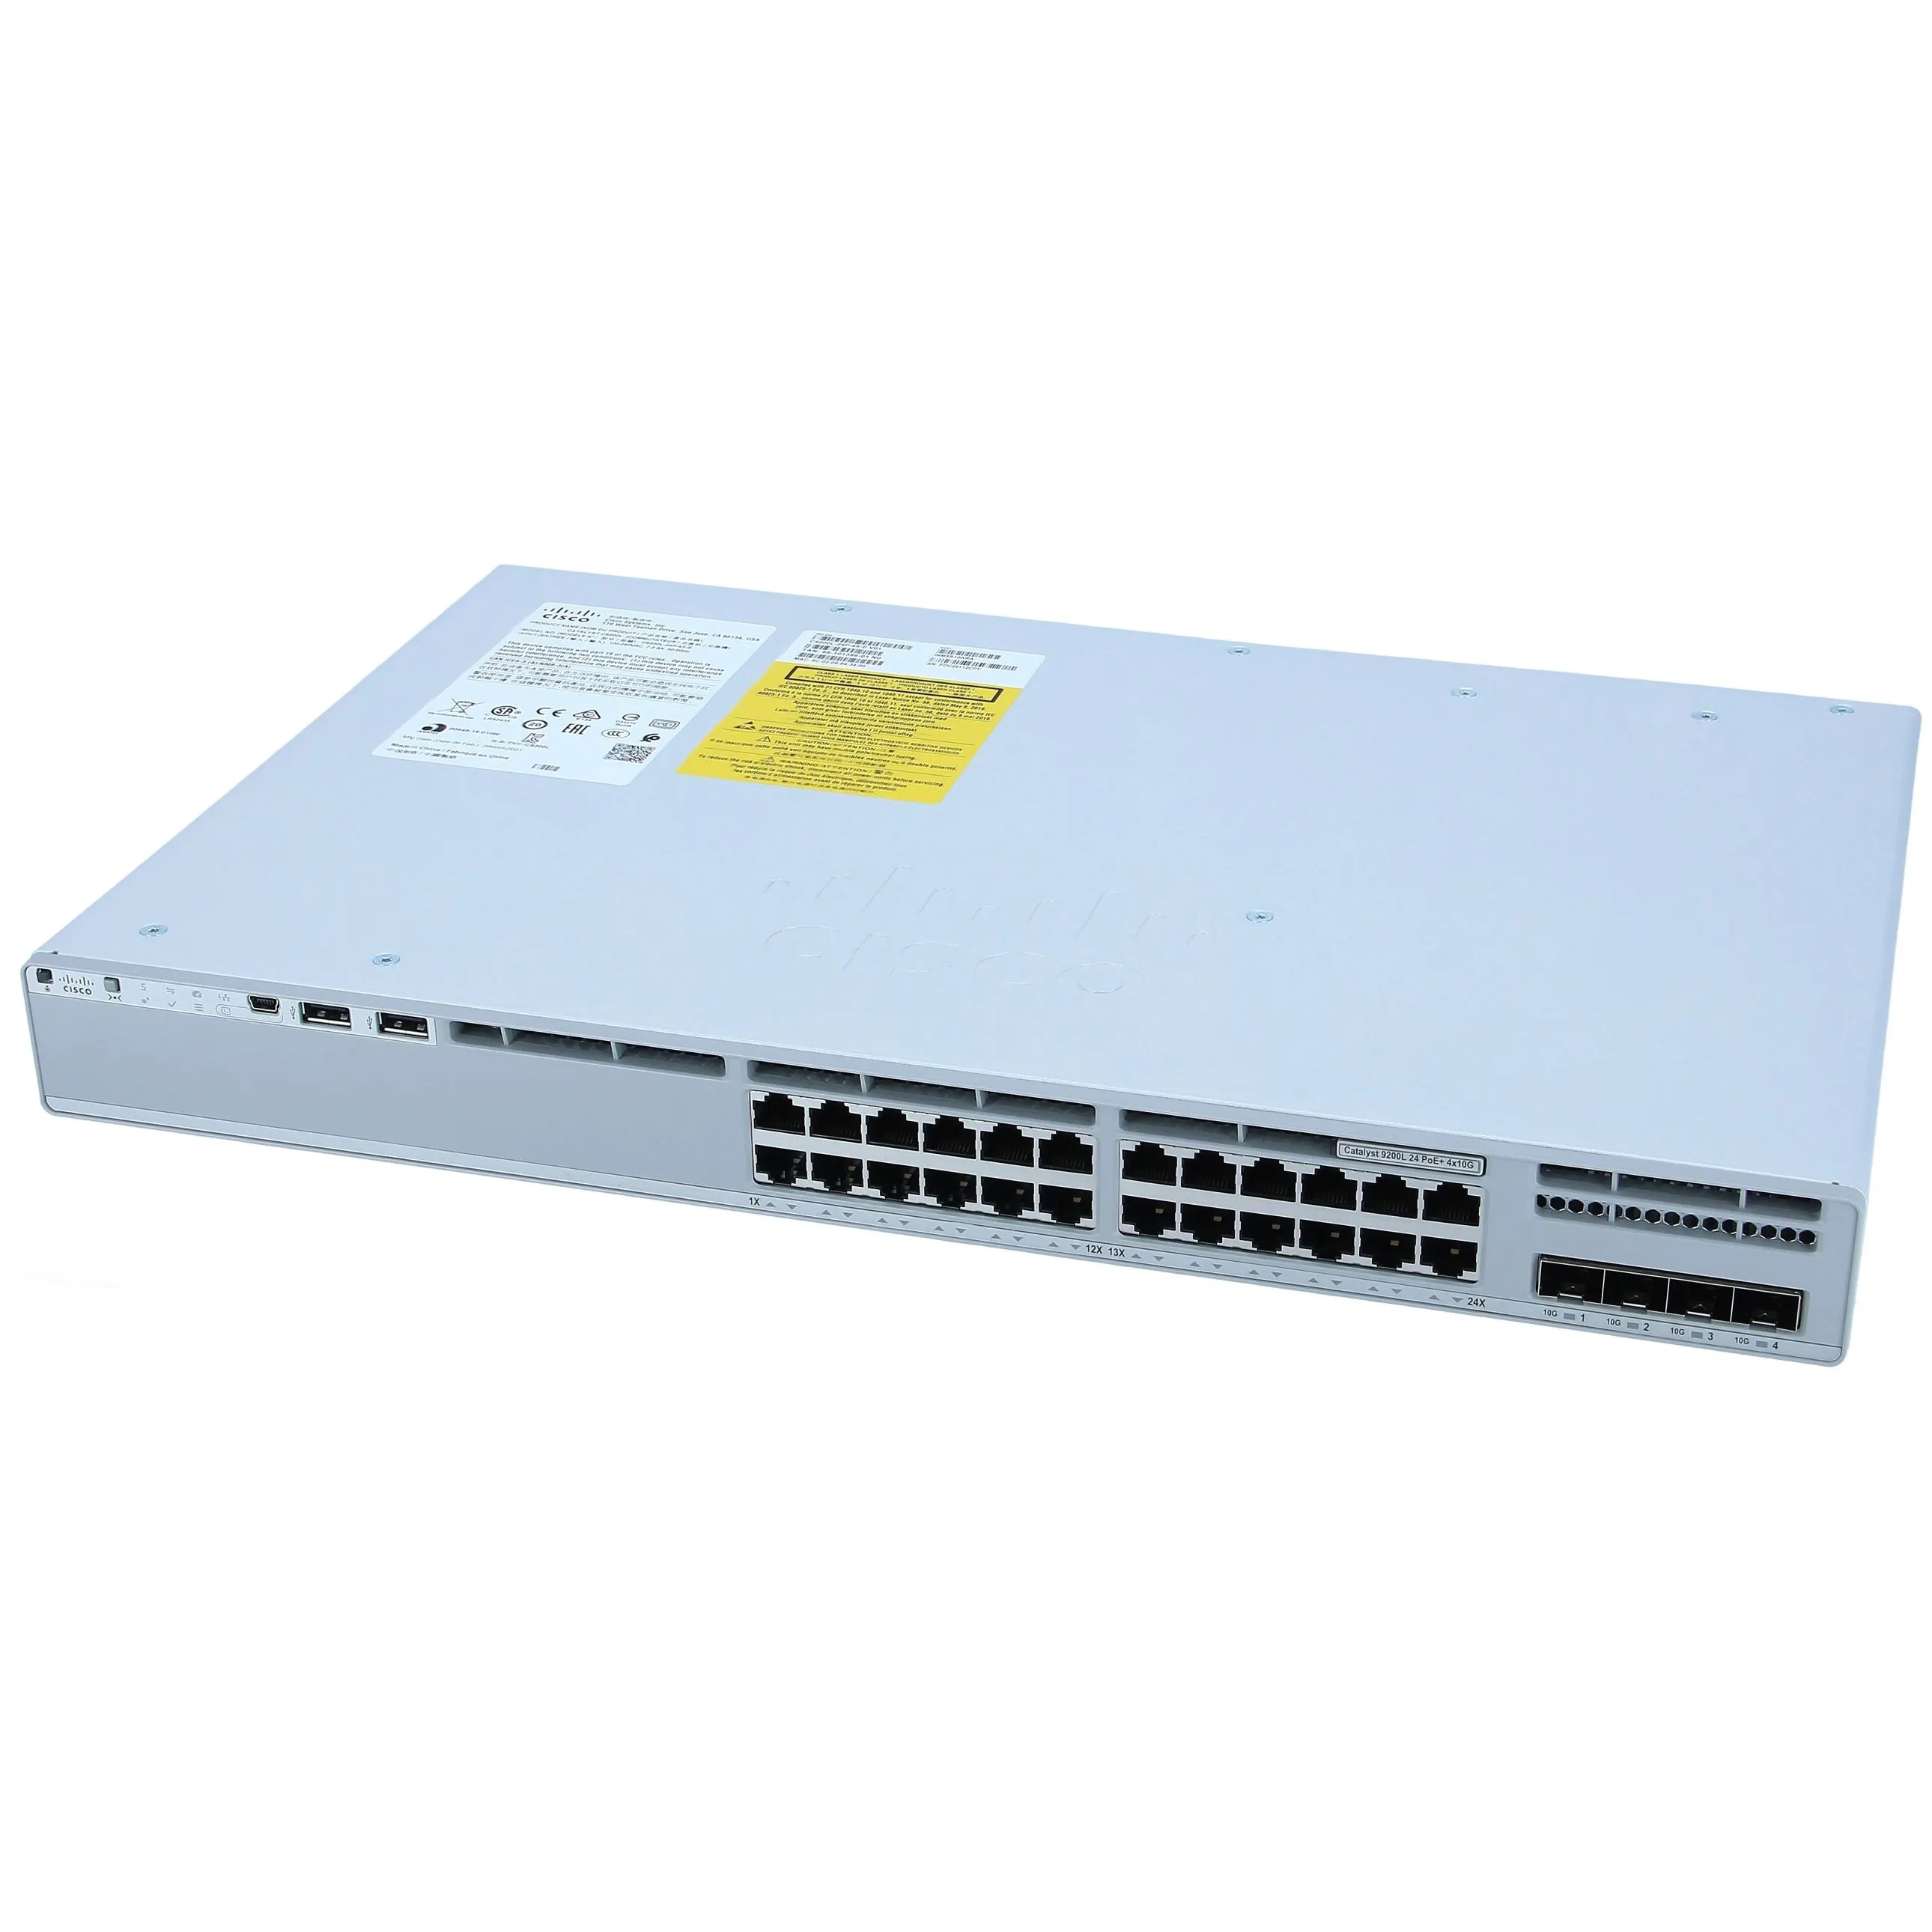 オリジナルの真新しいC9200L-24P-4X-Eインターネット管理半二重rj45sfp電源パワーオーバーpoeイーサネットネットワークポートスイッチ